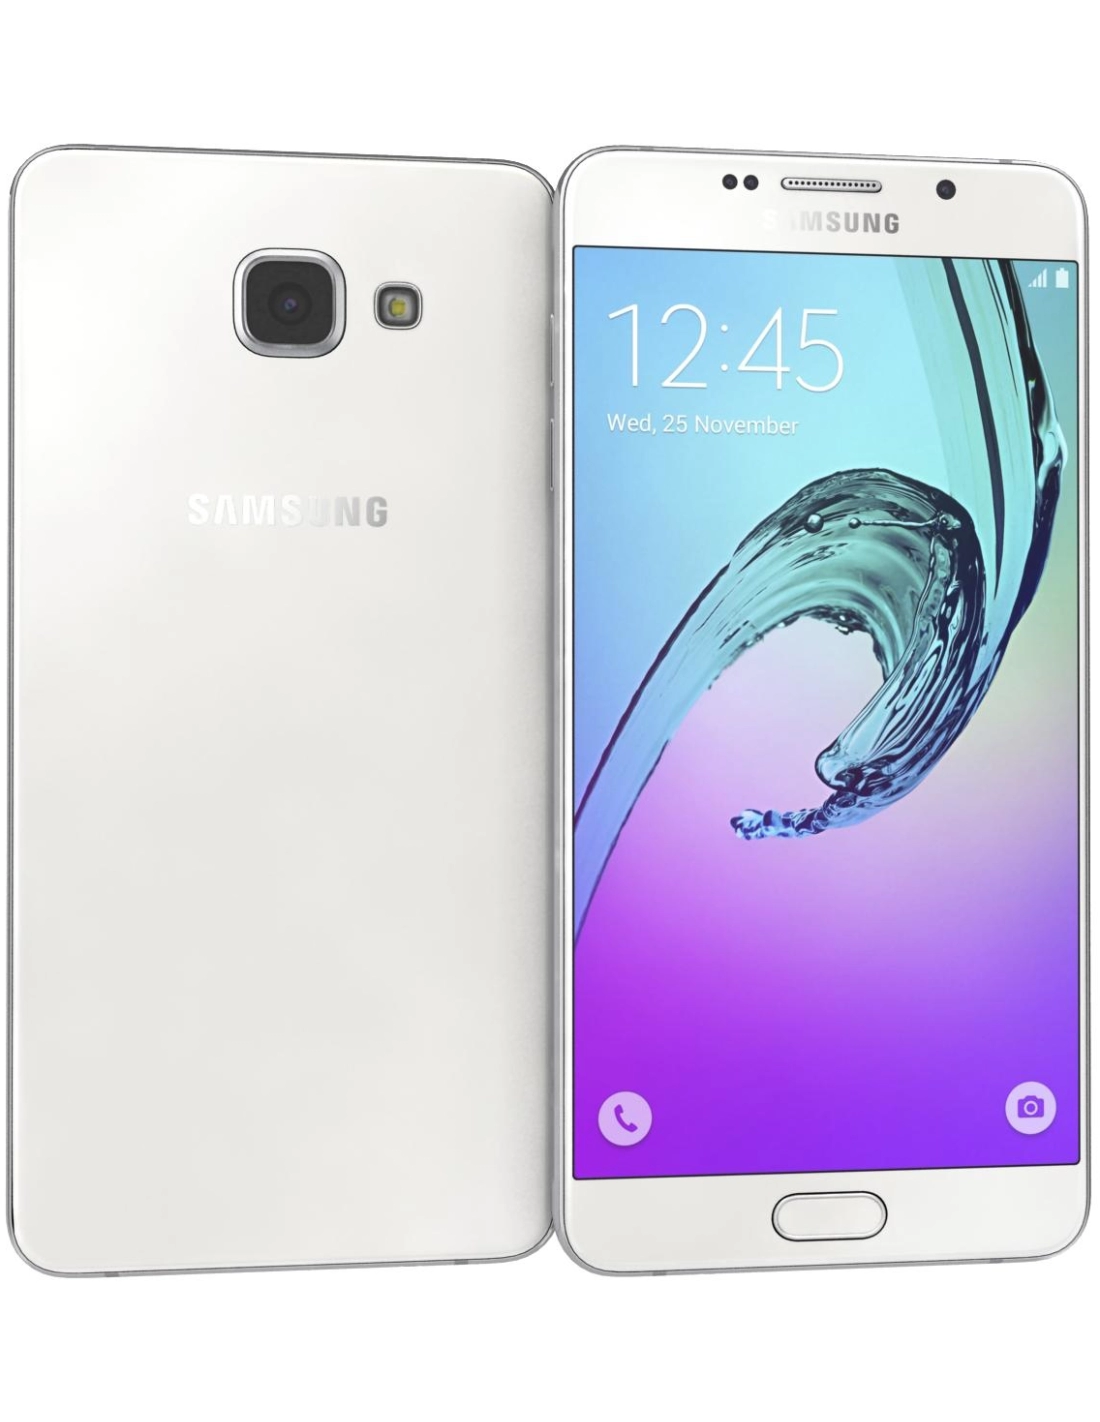 Samsung Galaxy A7 (2016) Duos SM-A7100 16GB Dual SIM Unlocked GSM ...